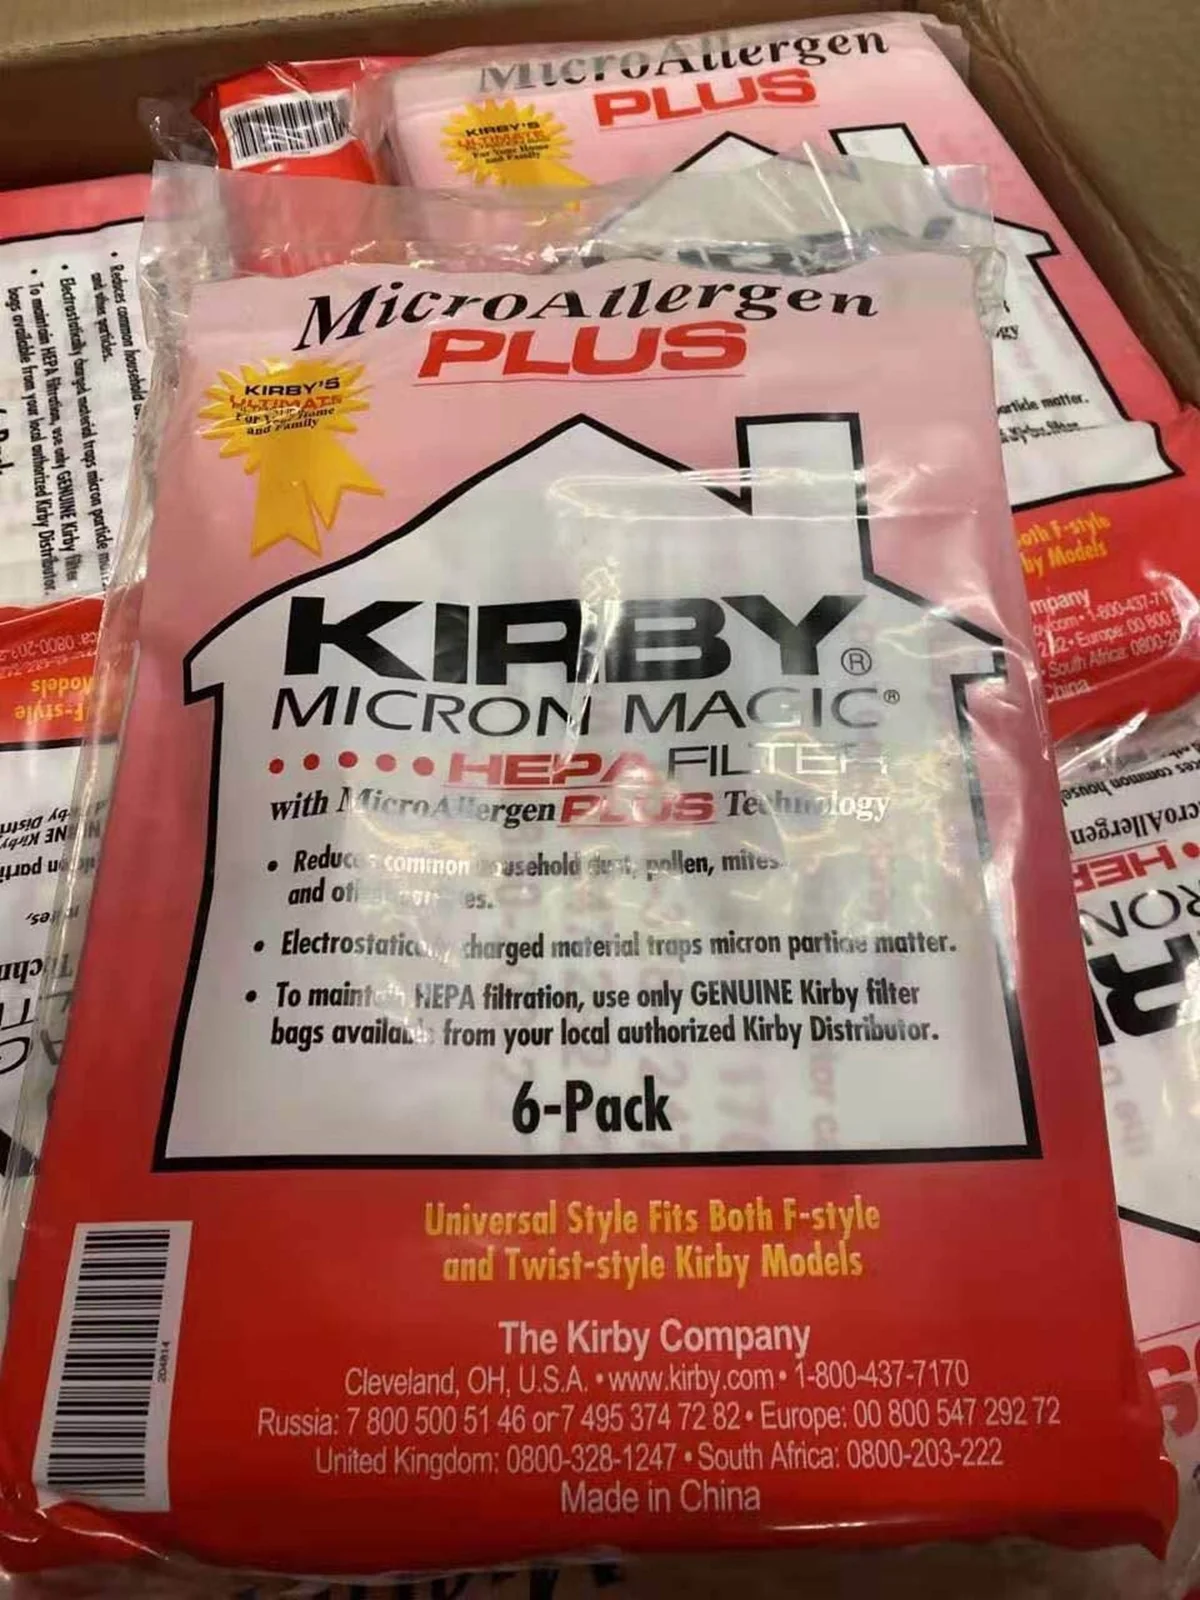 Мешки для фильтров для пылесоса Kirby Micron Magic Micro Allergen Plus HEPA, 6 шт./упаковка, нетканые мешки для пылесоса #204814